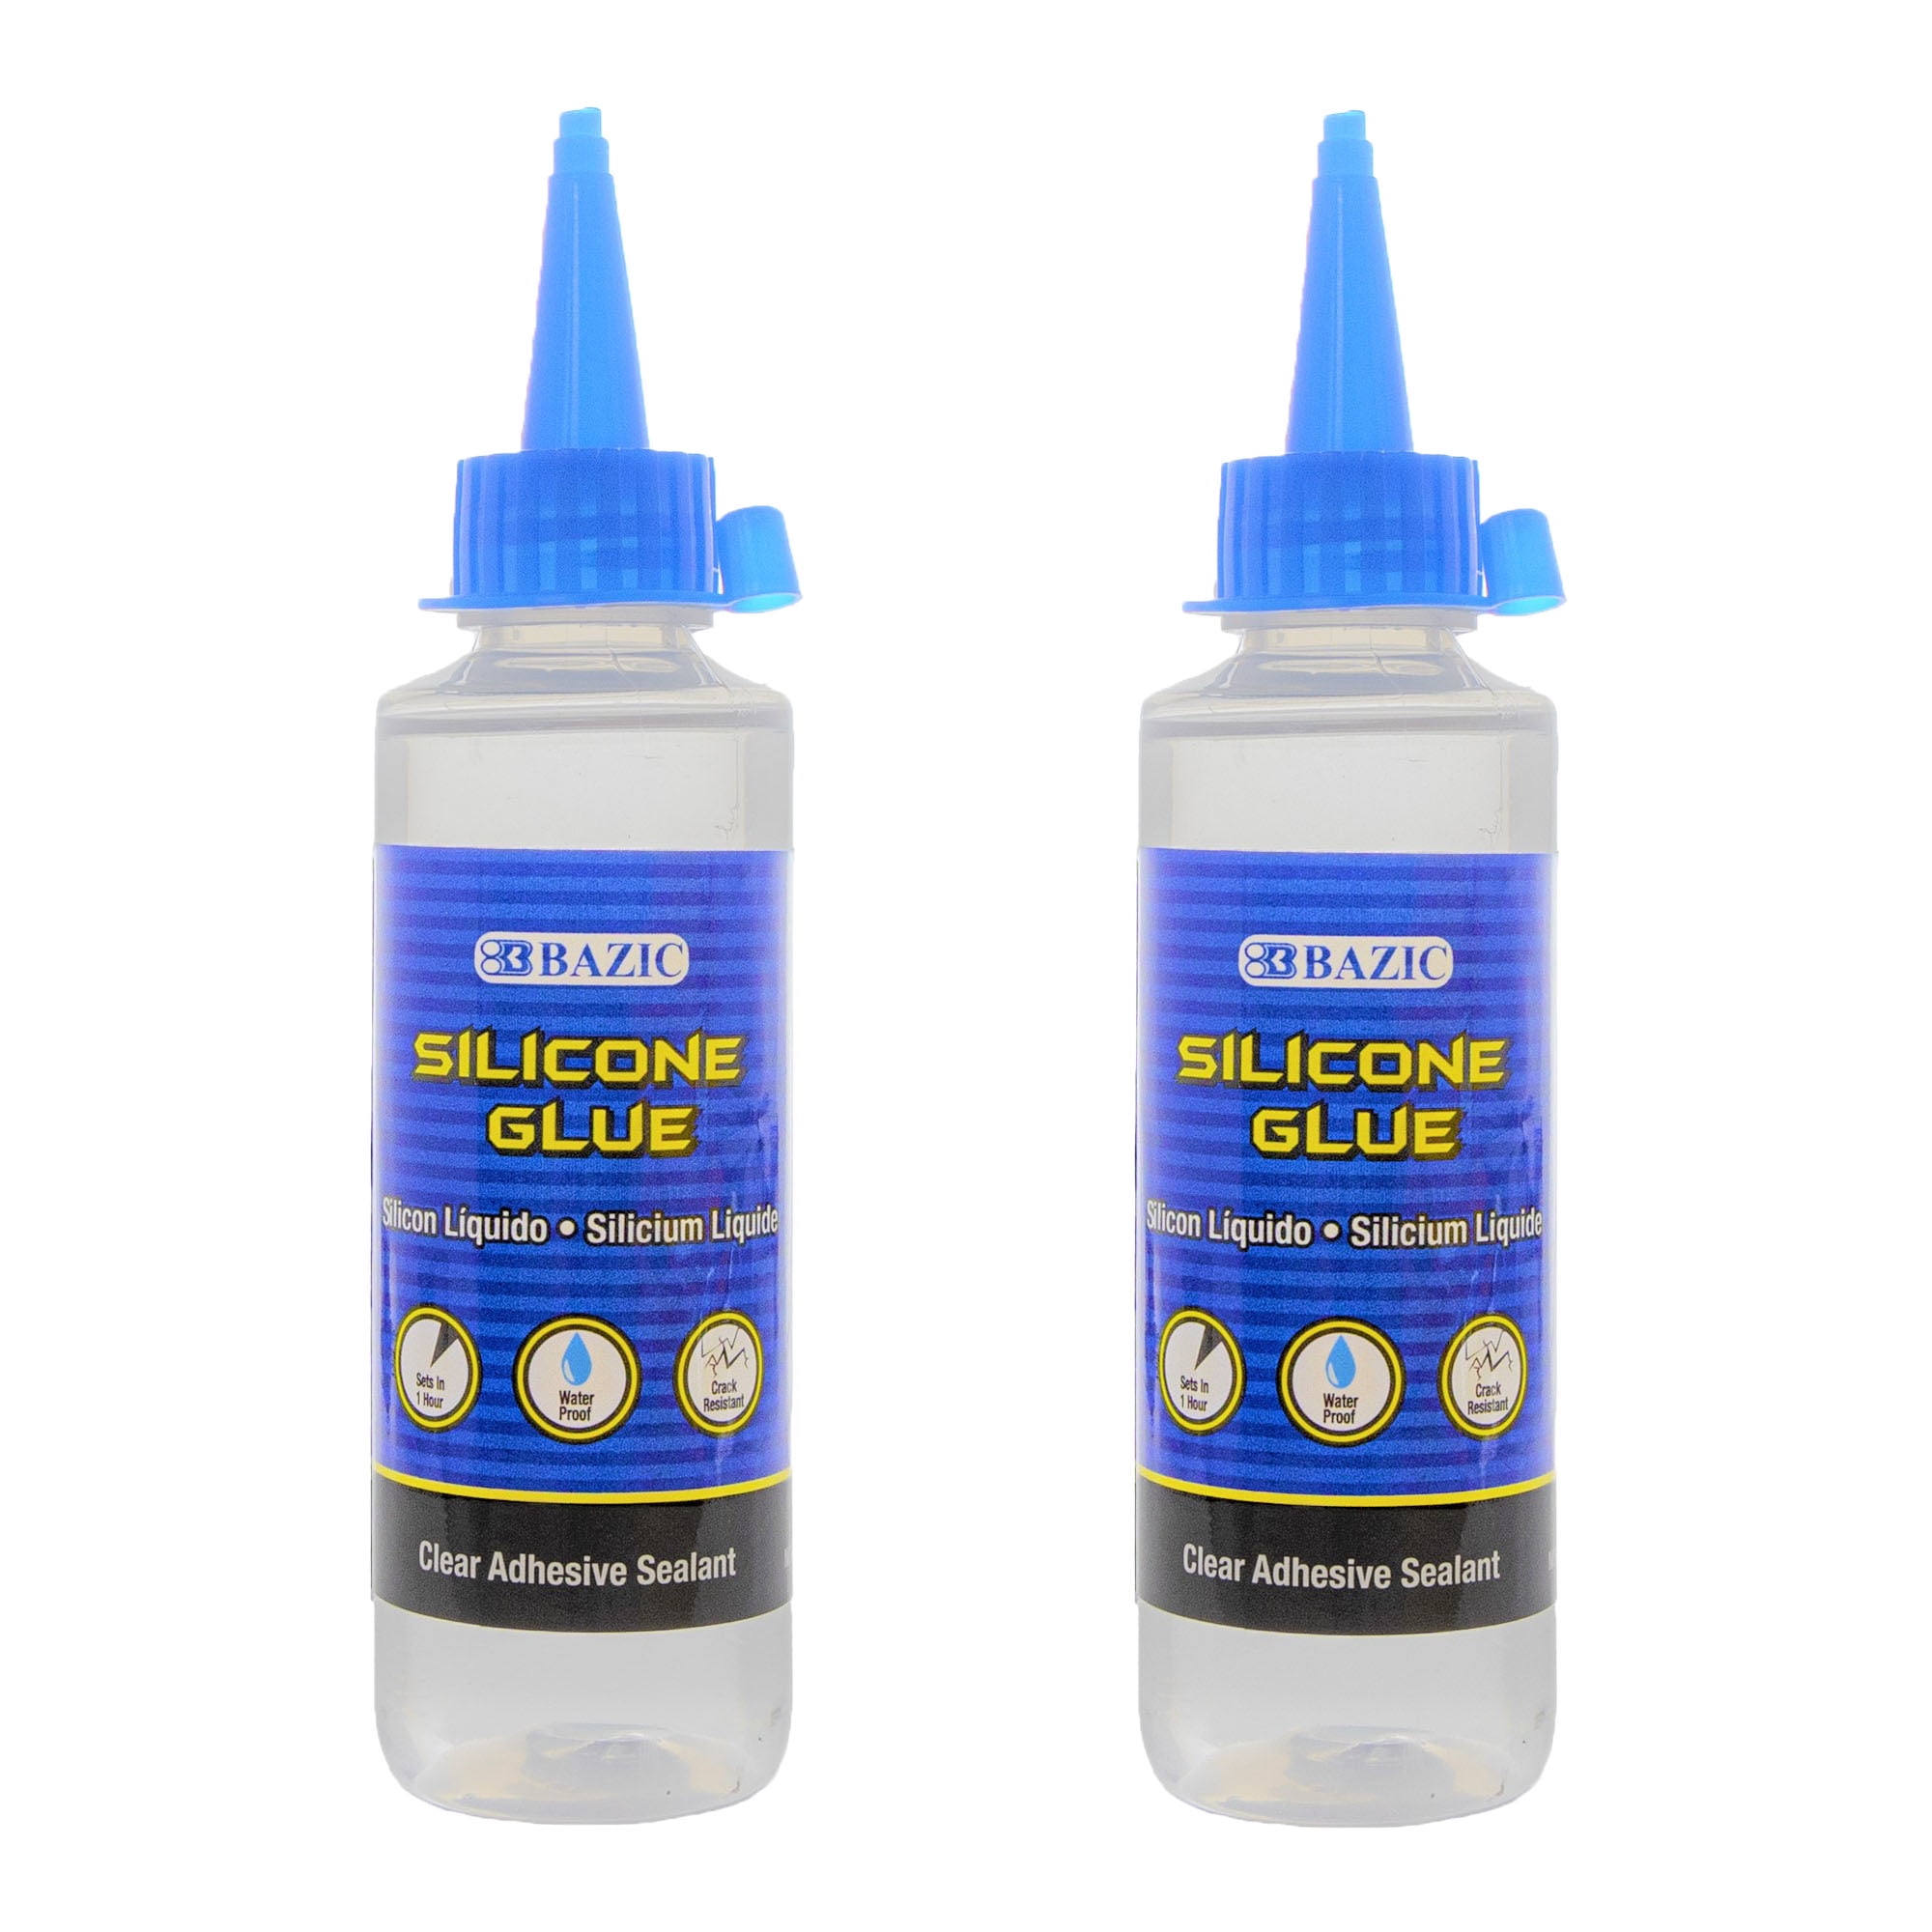 BAZIC Super Glue 0.10 oz (3g)(4/Pack) - Bazicstore